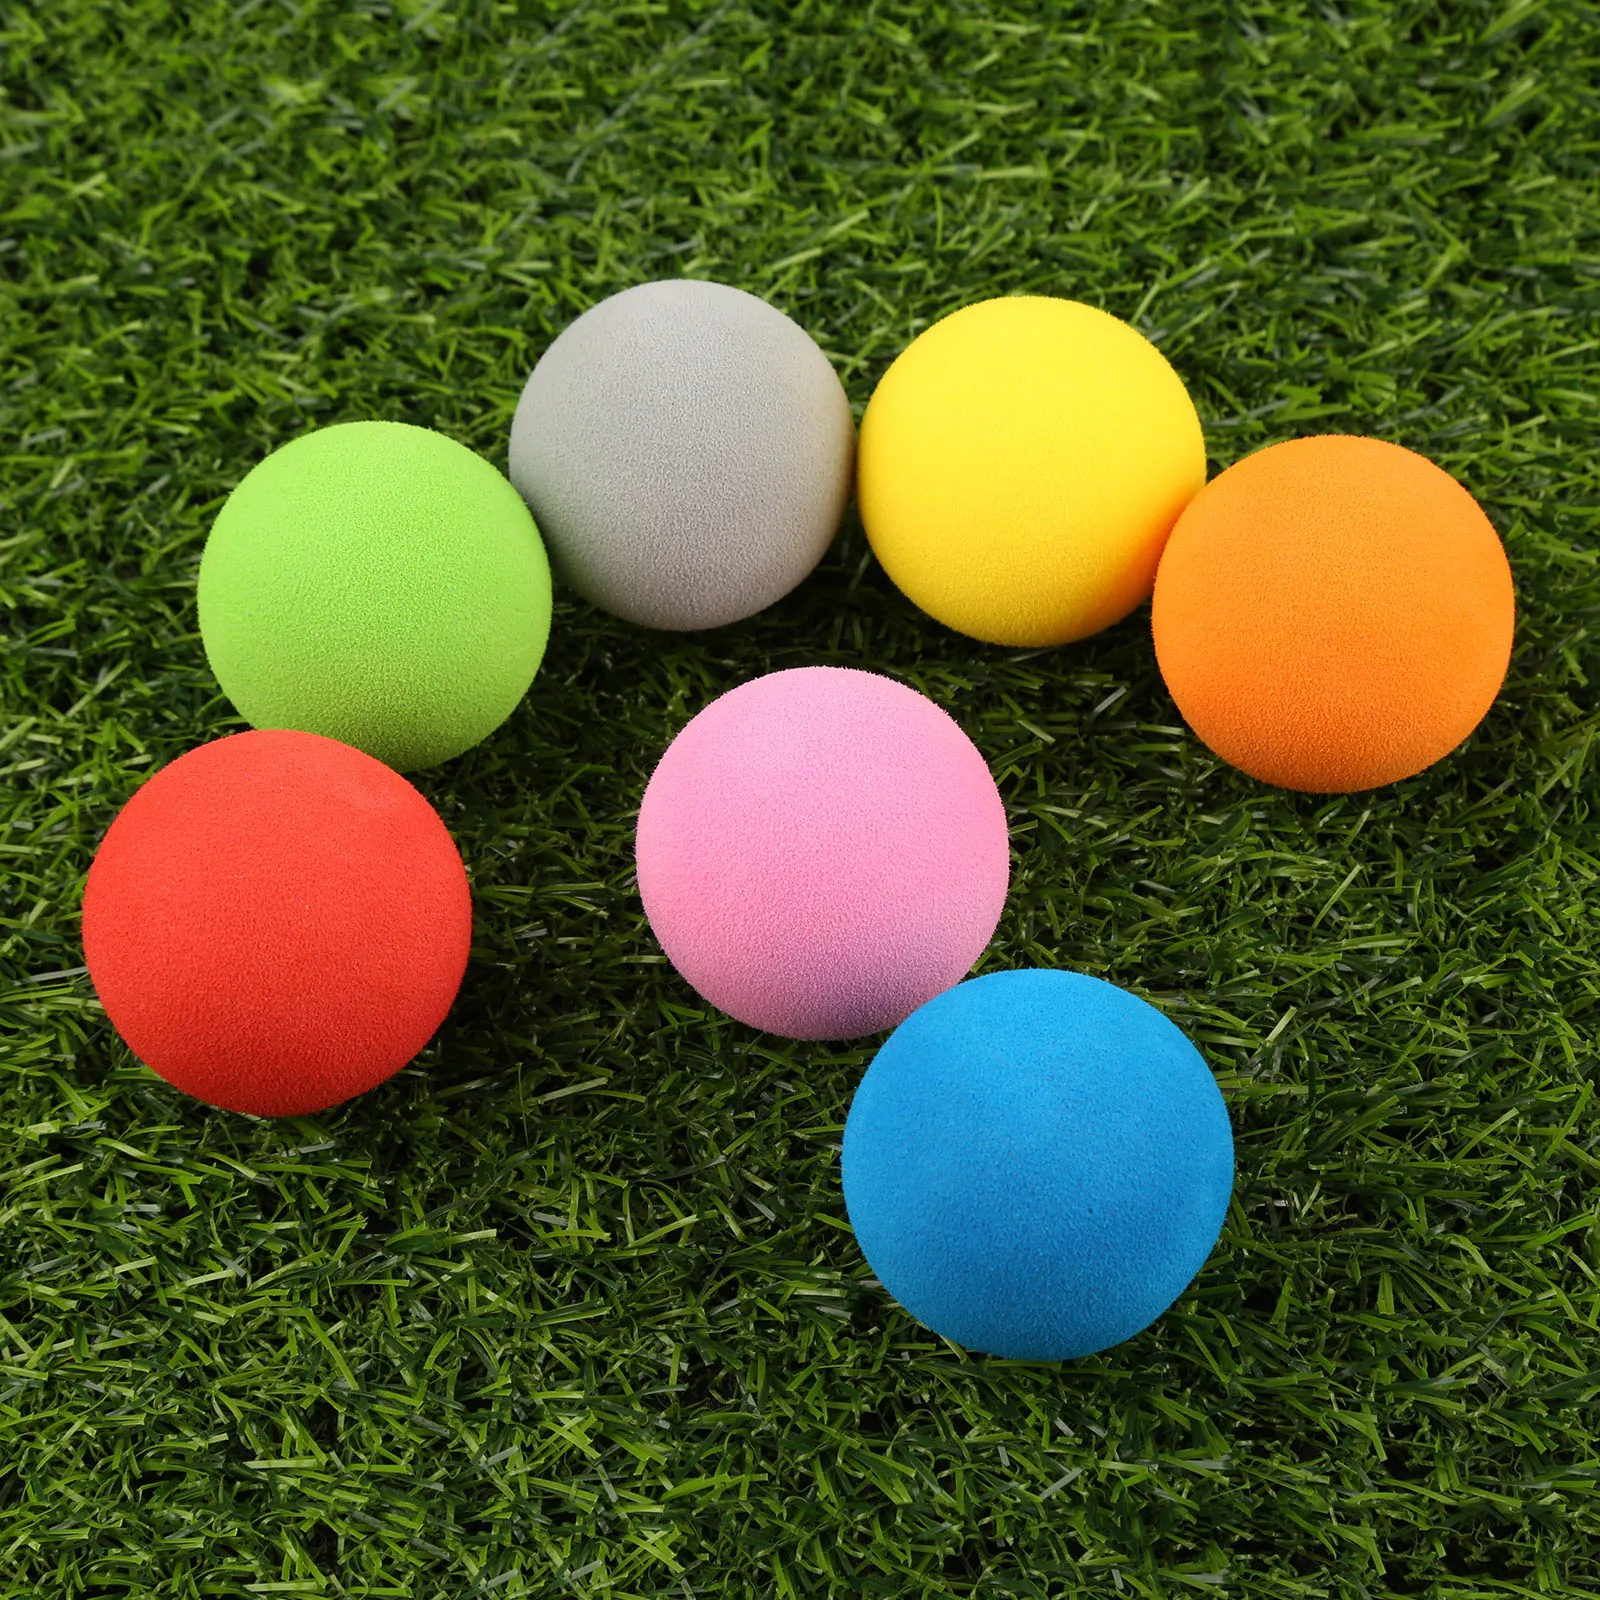 

Мячи для гольфа из пены ЭВА, 10 шт./лот, мягкие губчатые мячи для игры на открытом воздухе, мячи для тренировок в гольфе/теннисе, 7 цветов